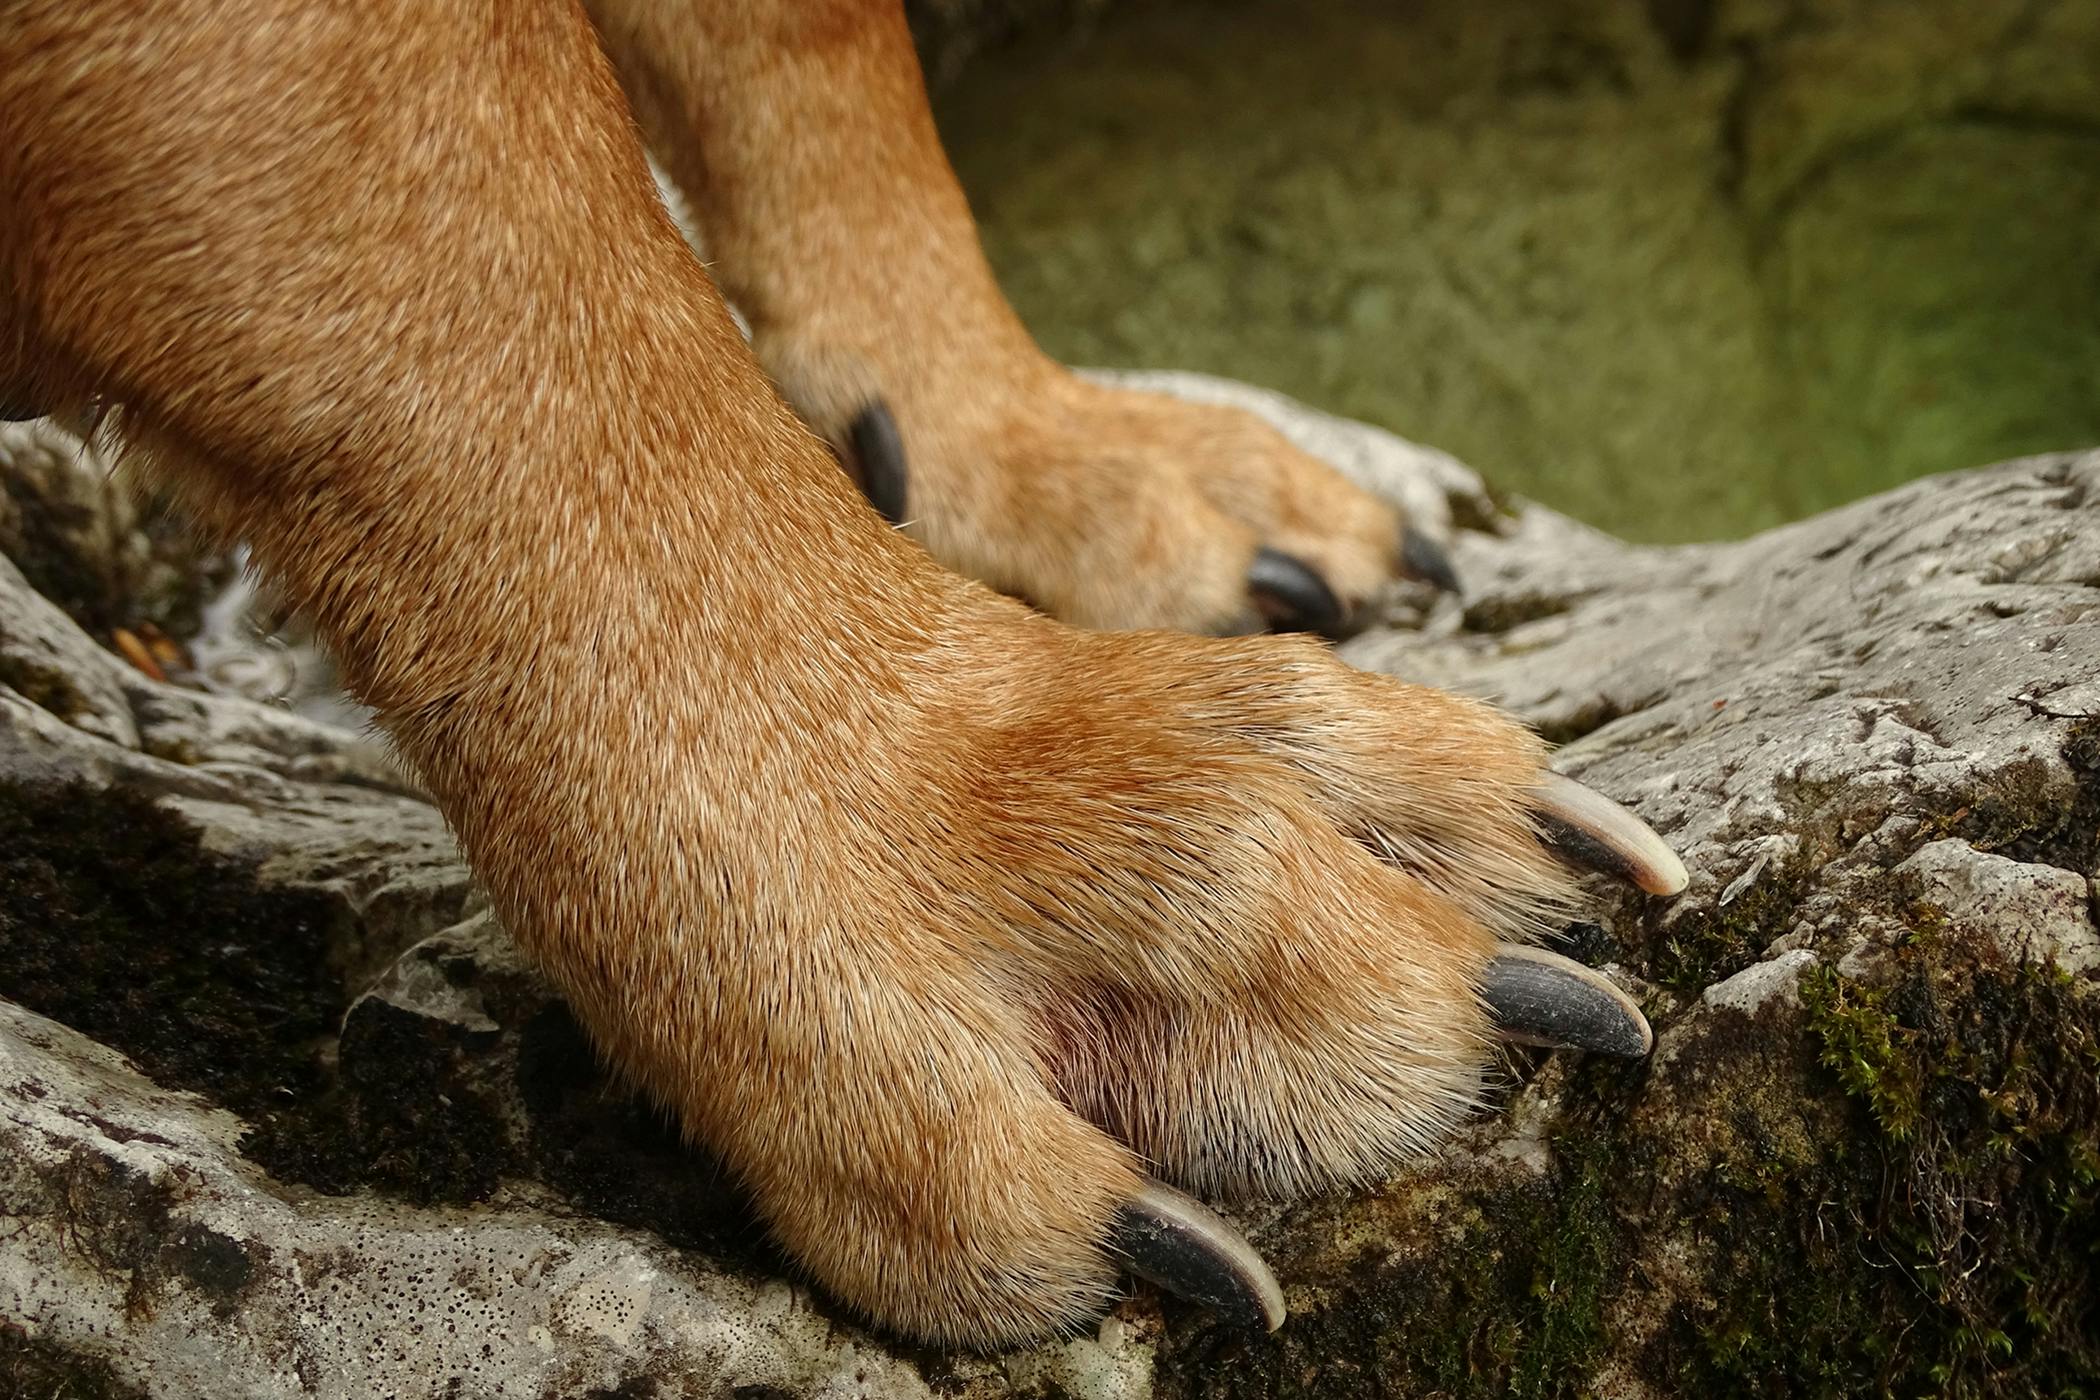 dew claw dog hind leg